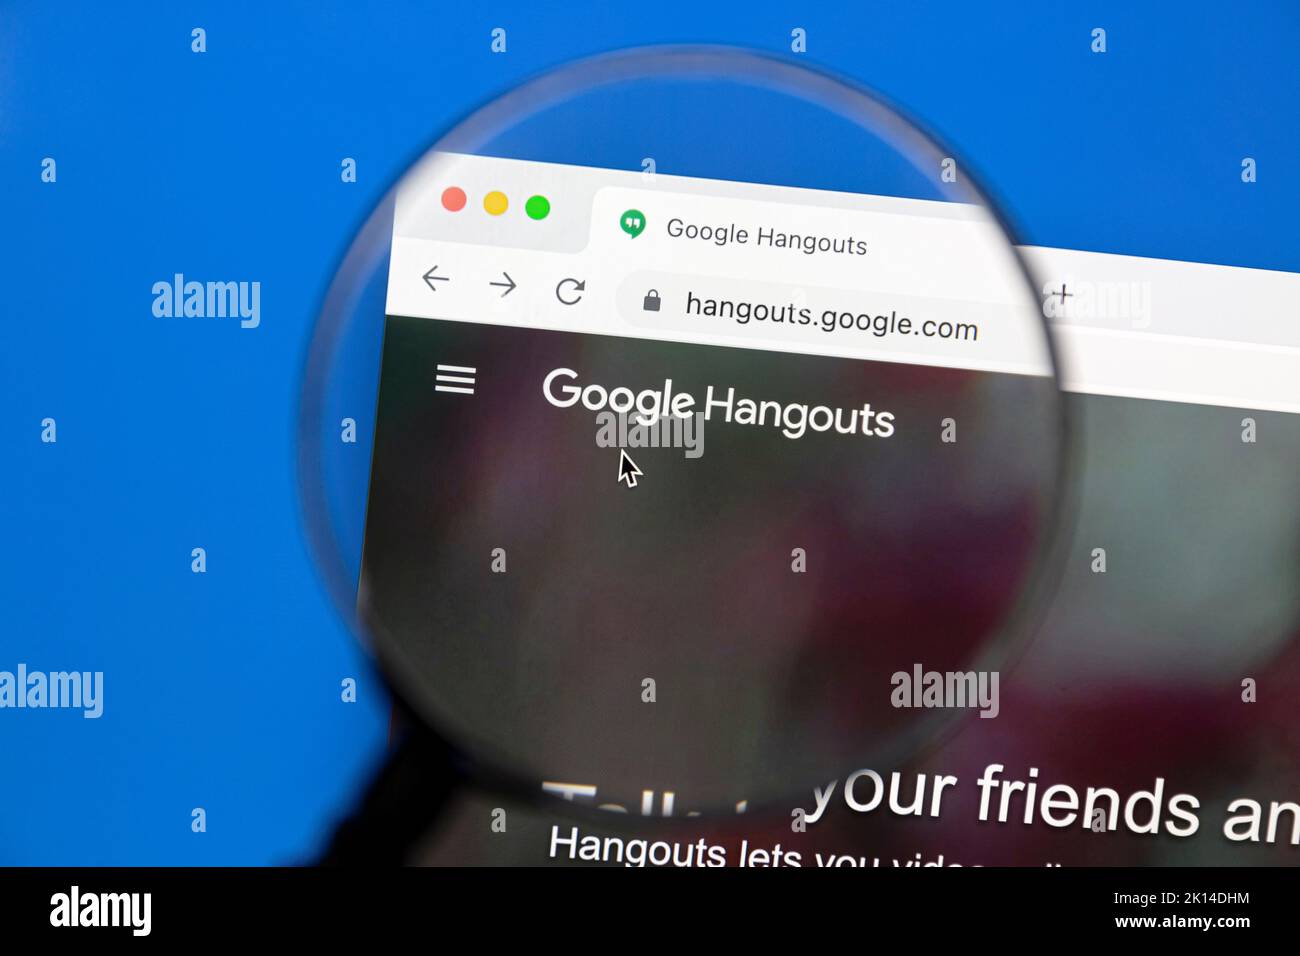 Ostersund, Suède - 29 juin 2022: Page d'accueil Google Hangouts sur un écran d'ordinateur. Google Hangouts est un service de messagerie instantanée développé par Google. Banque D'Images